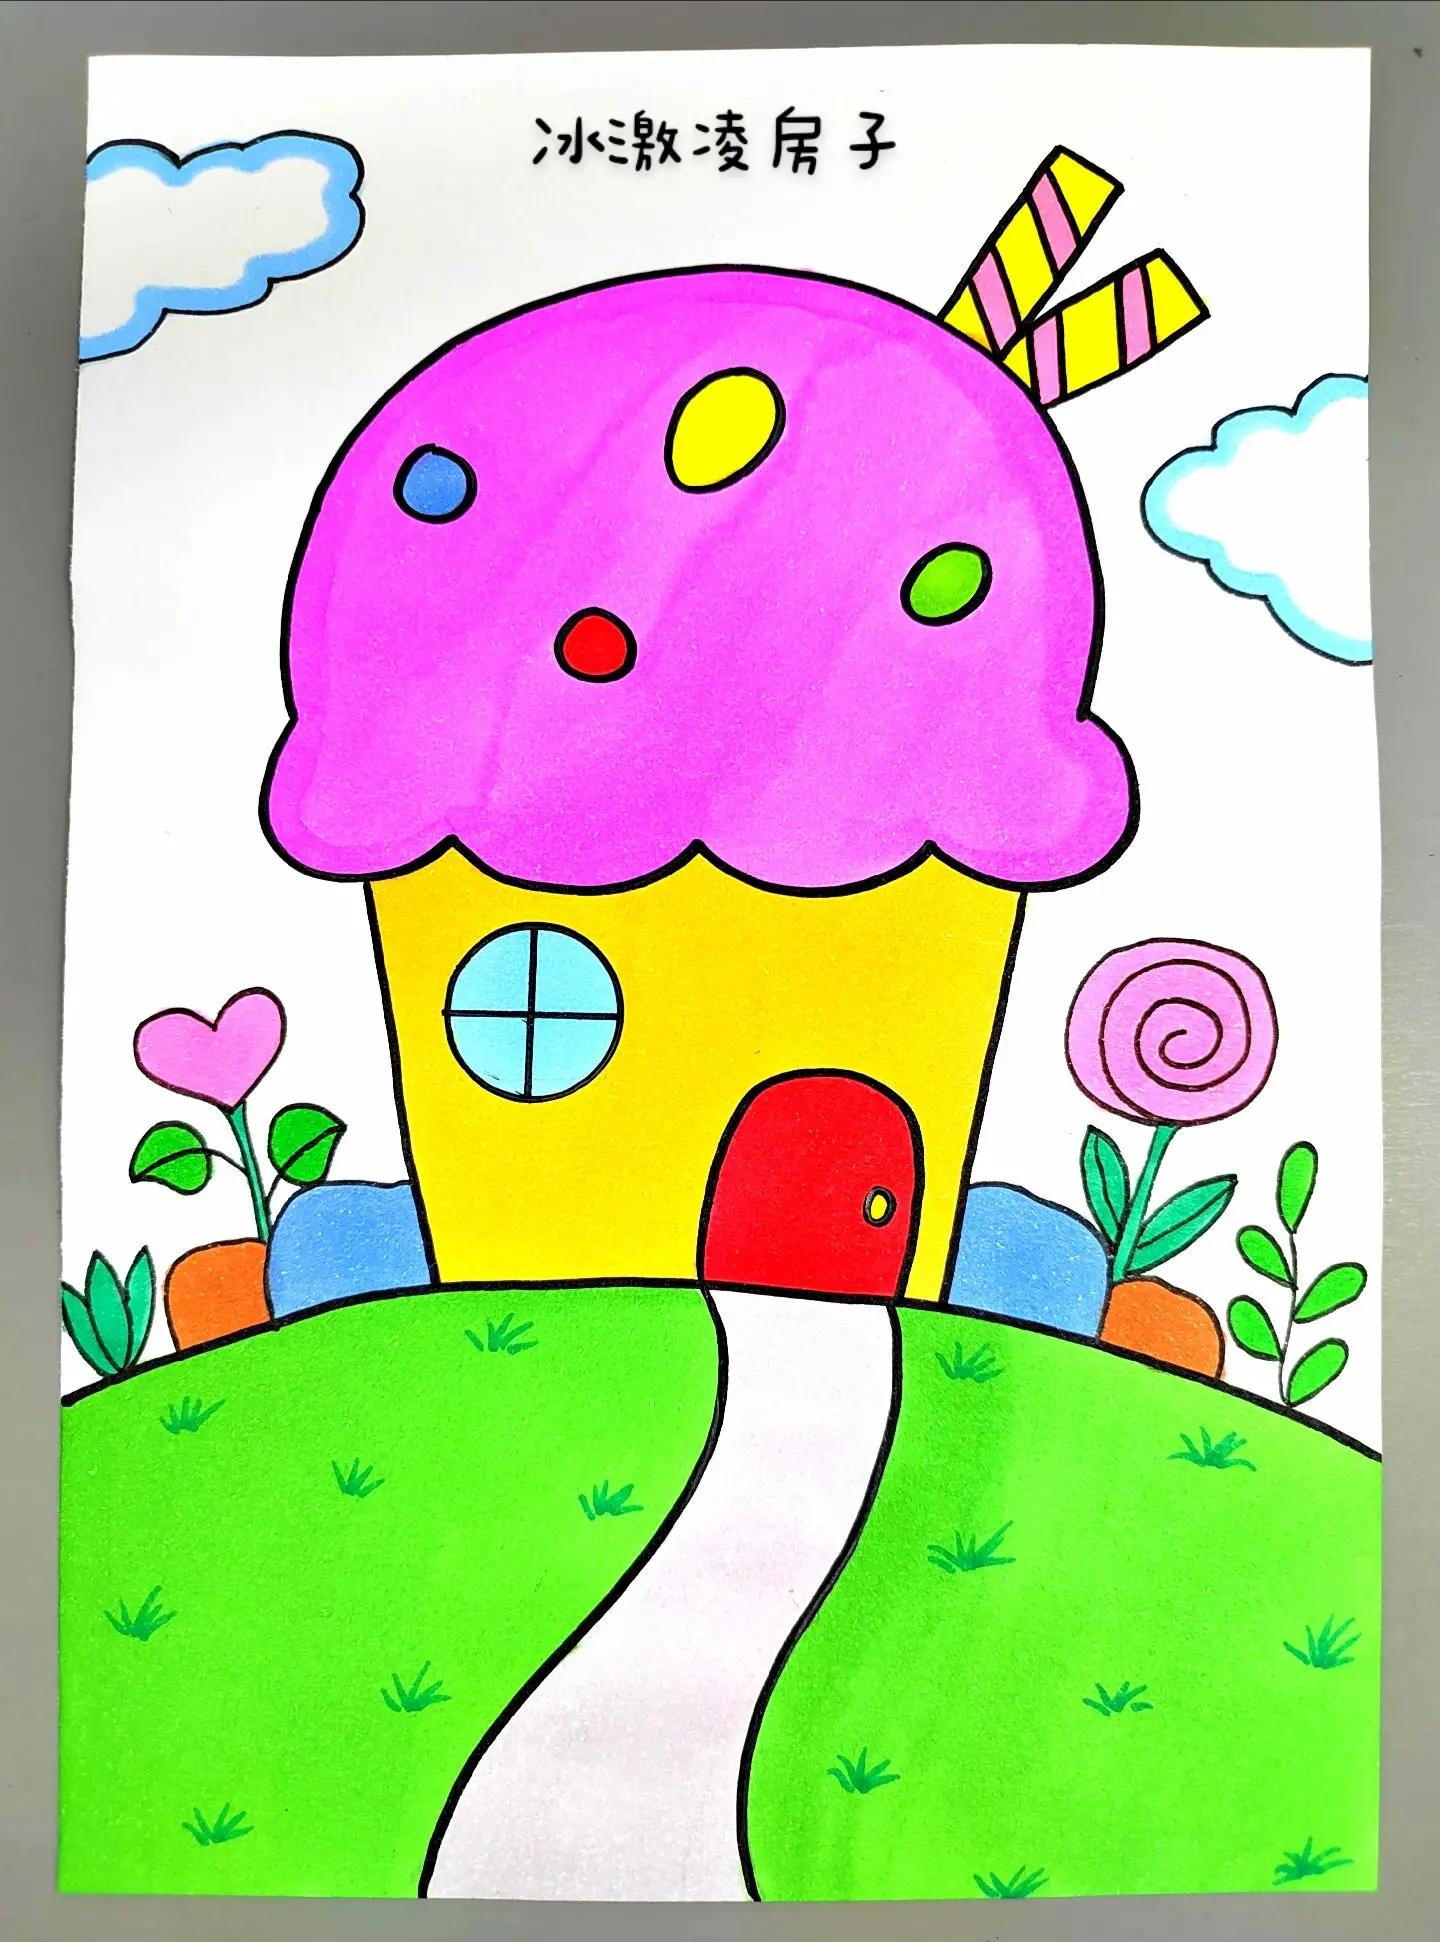 蘑菇房子简笔画 蘑菇房子简笔画带颜色搭配 - 第 3 - 水彩迷